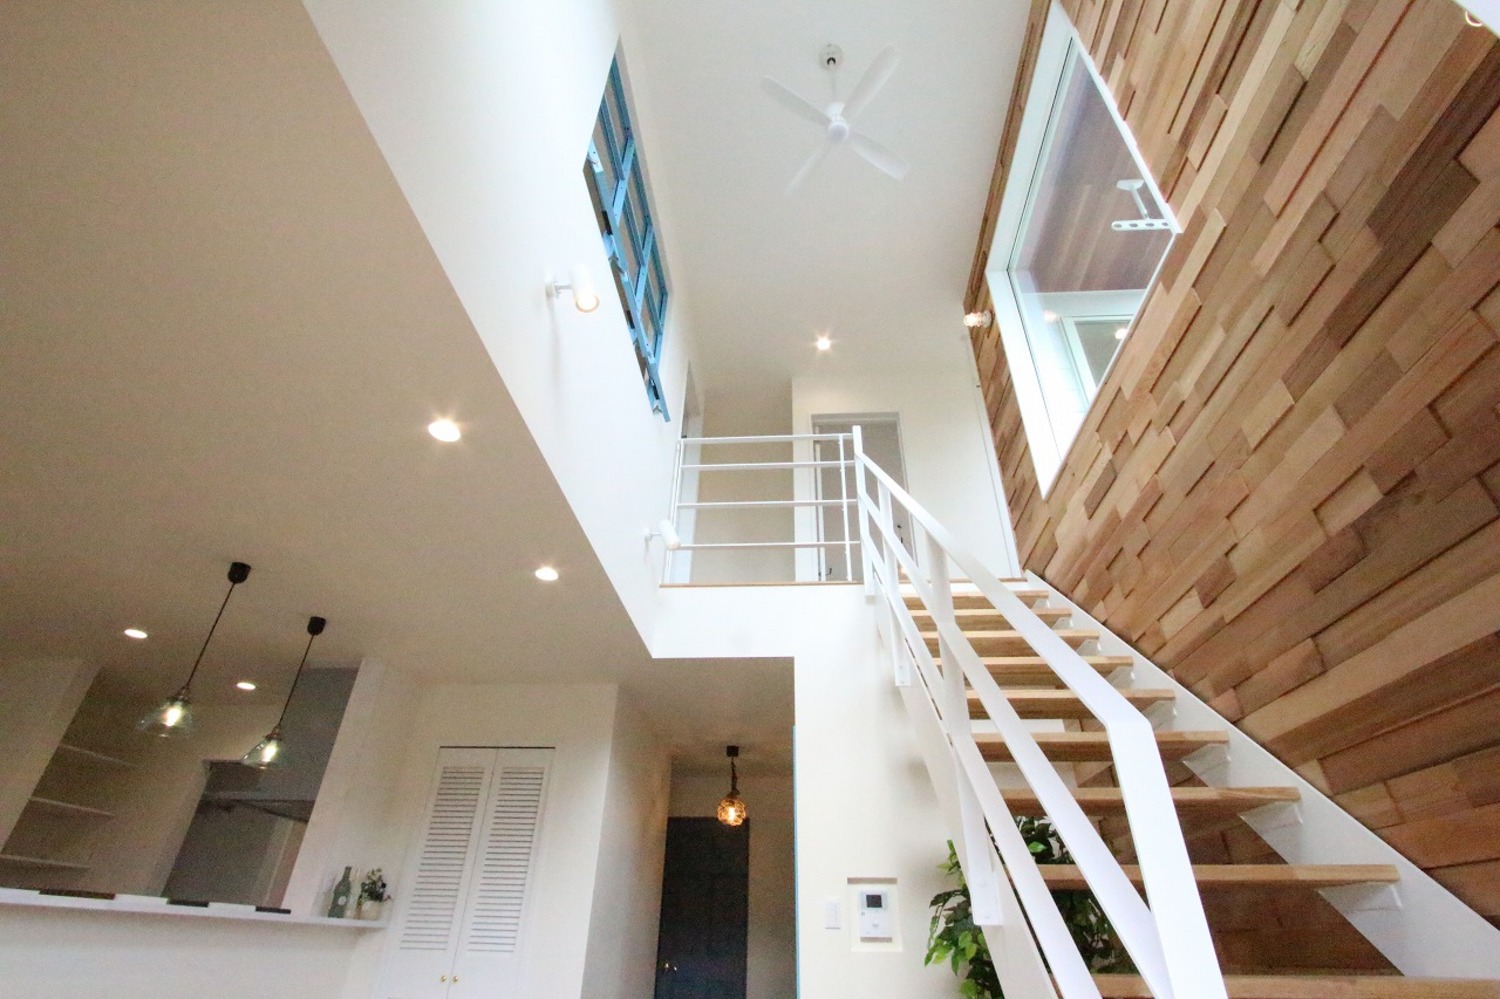 -ゆるっとオシャレな西海岸風のデザイン-
シースルー階段が家族を繋ぐハンモックの似合う家